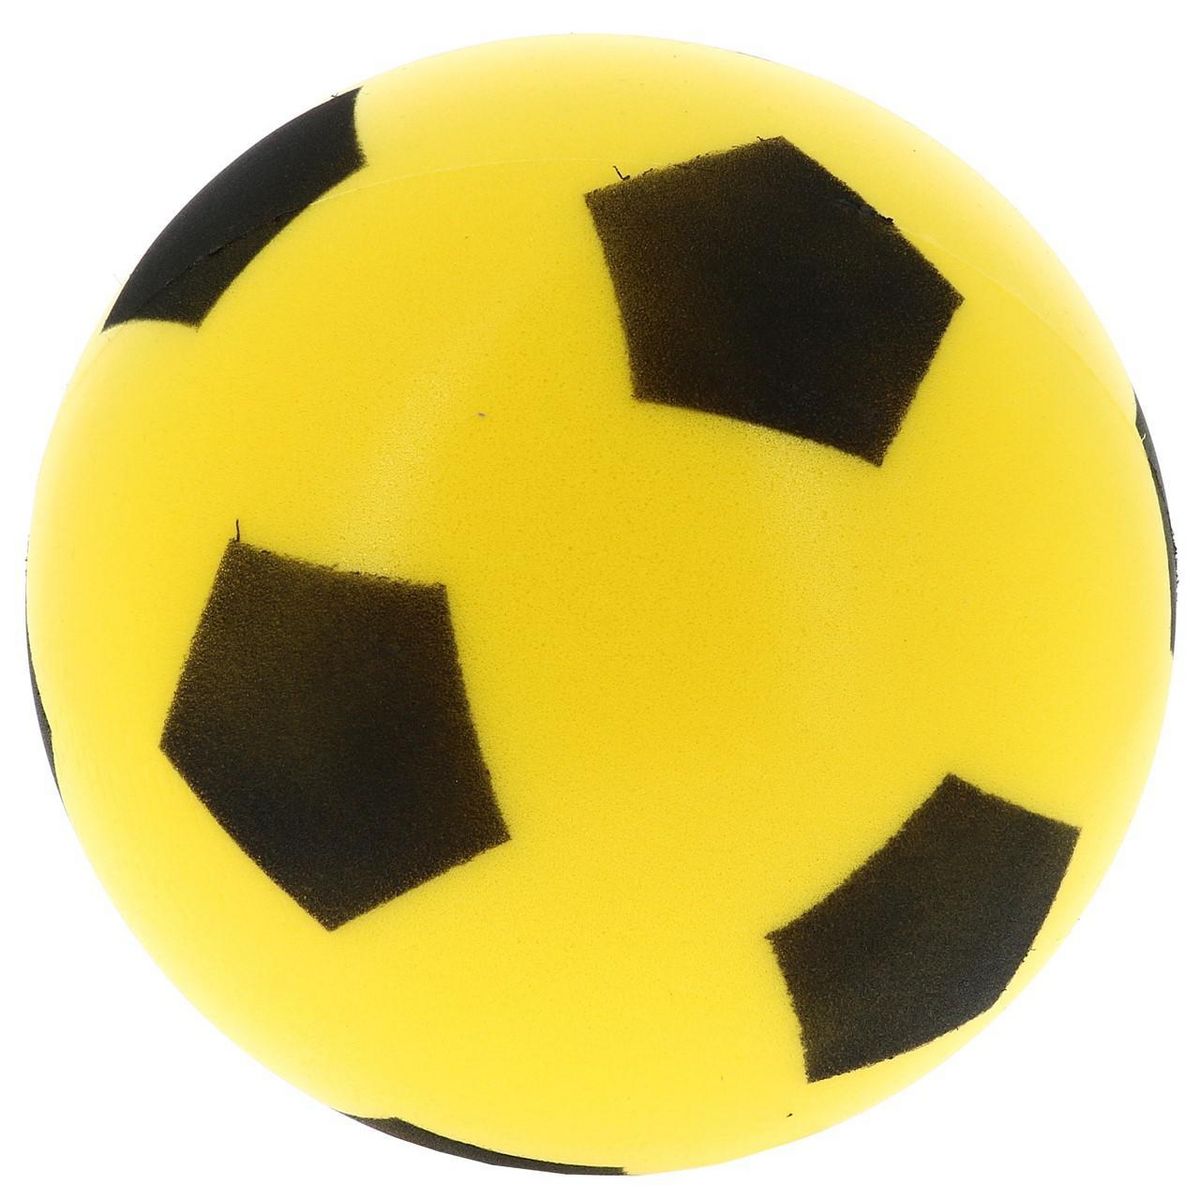 SPORT AND FUN Ballon football loisir Sport and fun Ballon mousse